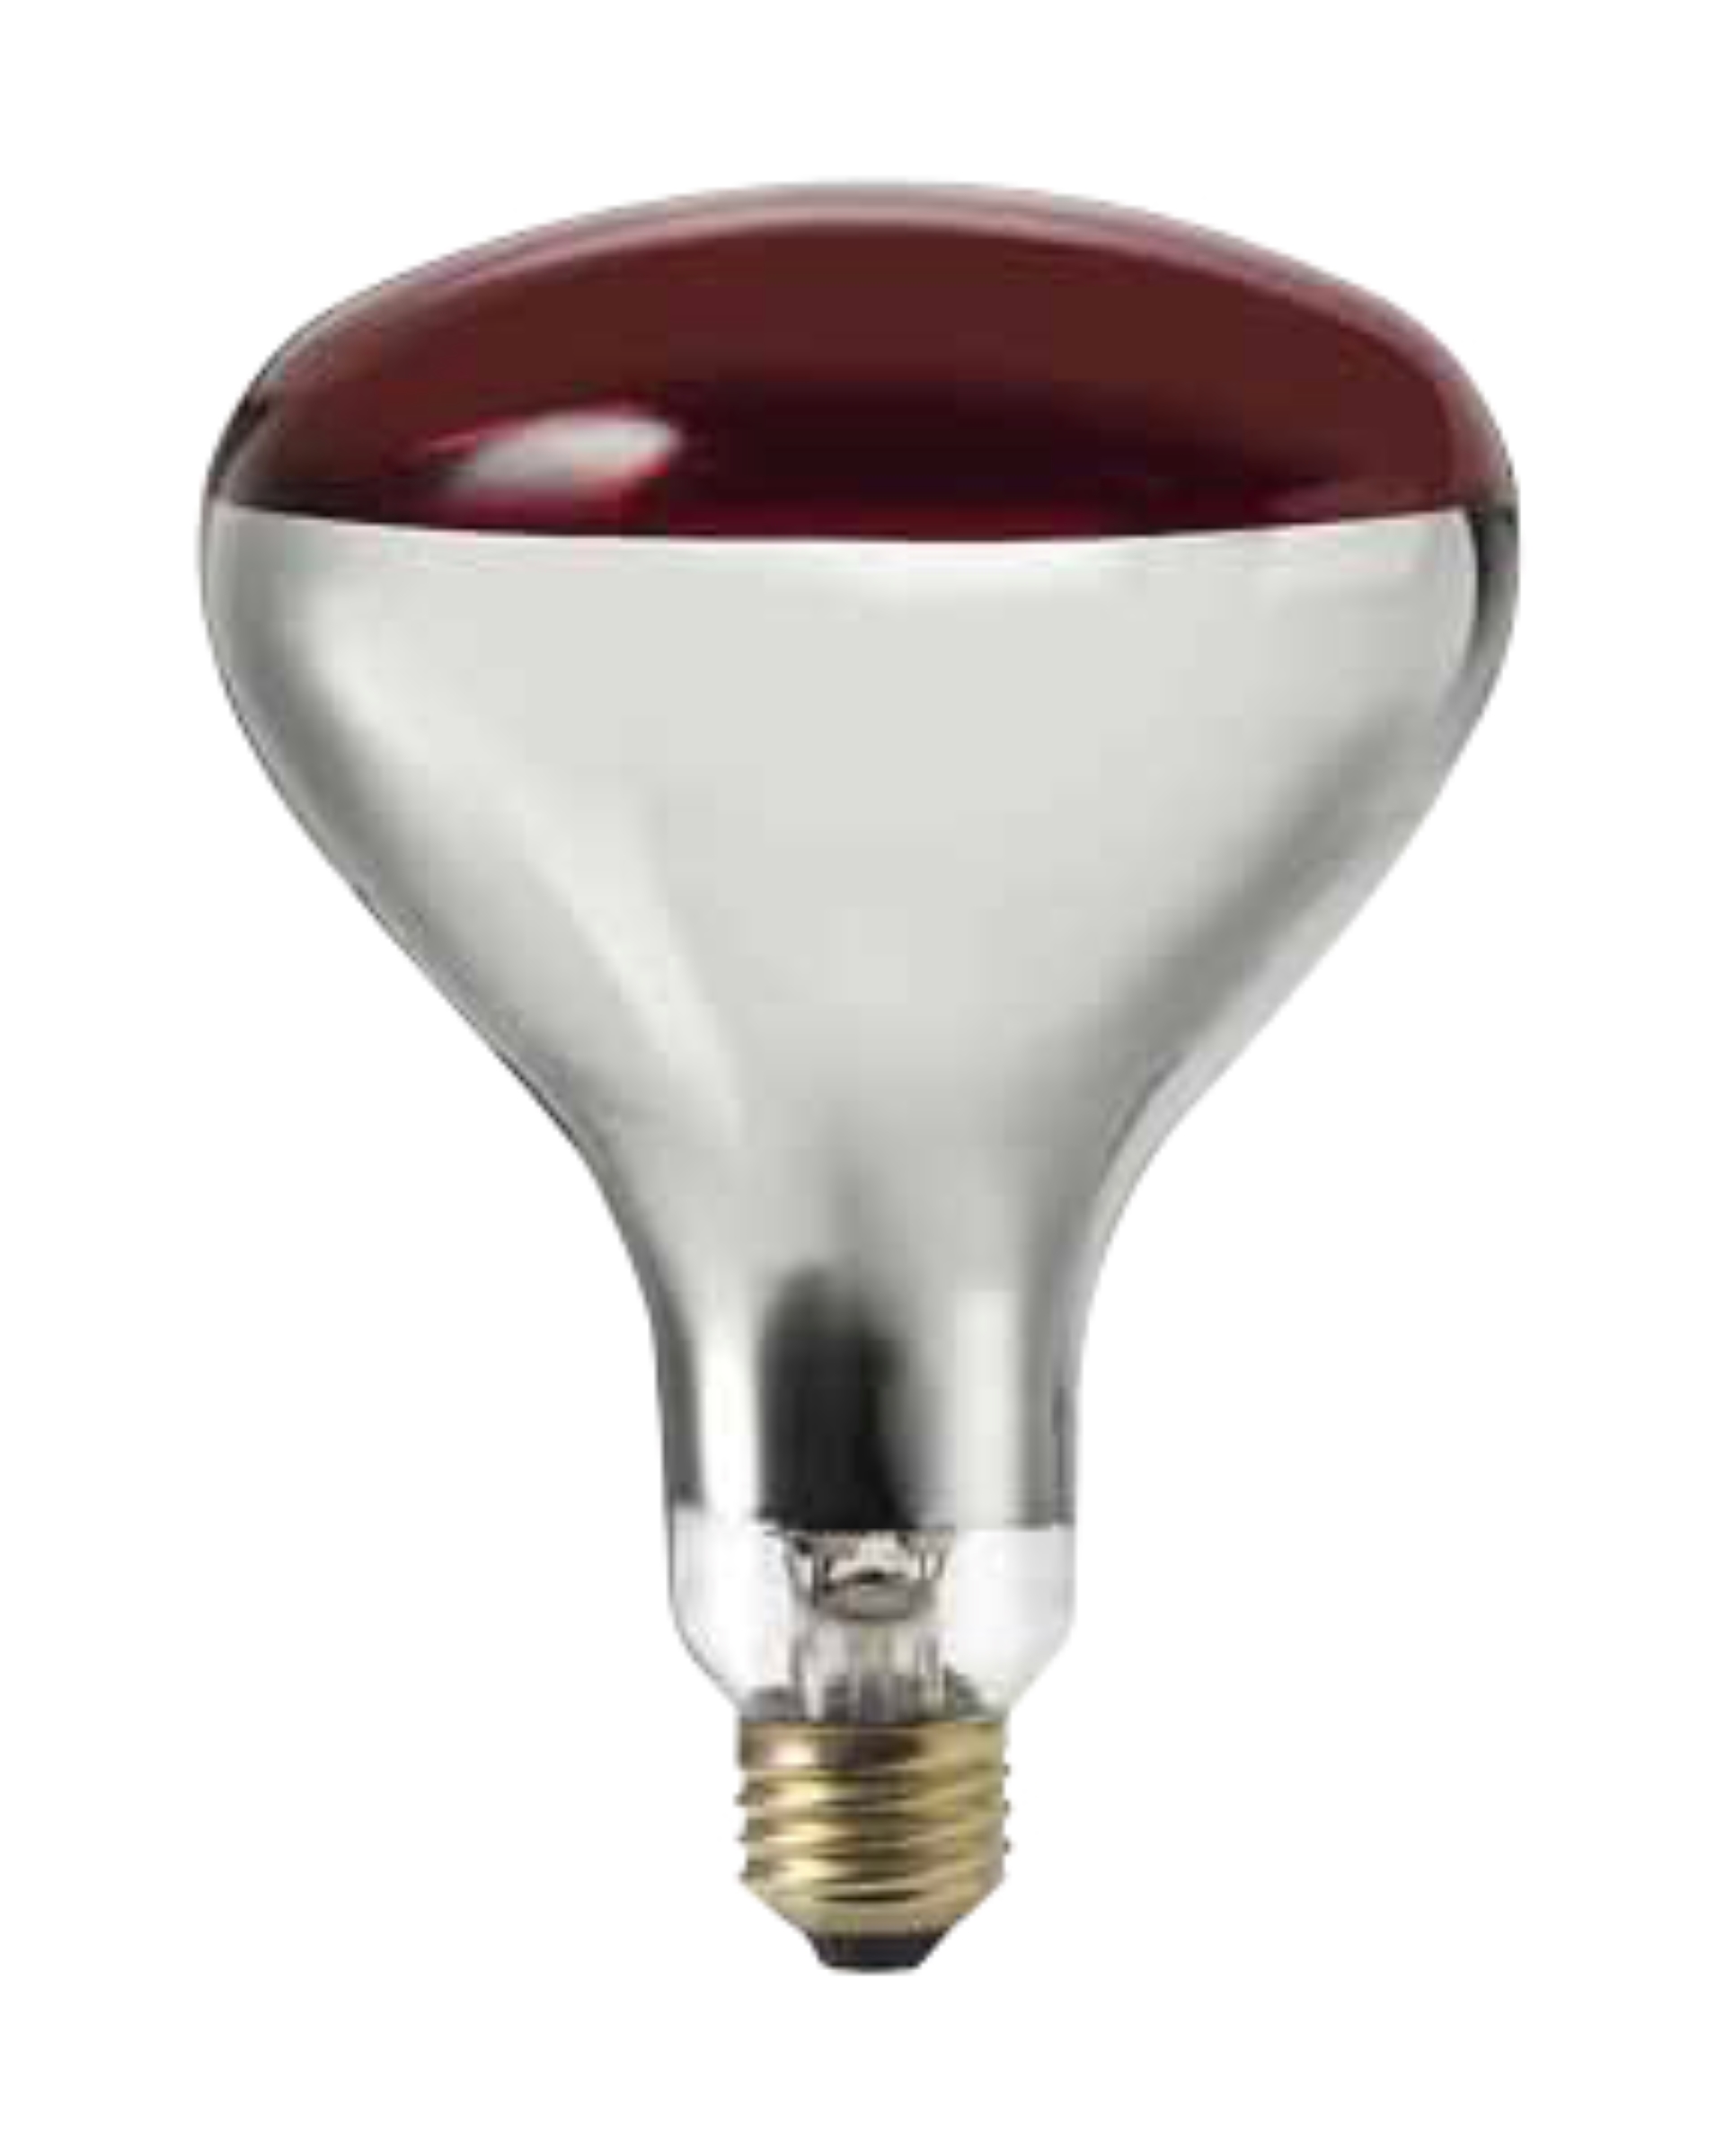 Heat Lamp Bulb Red 250 Watt